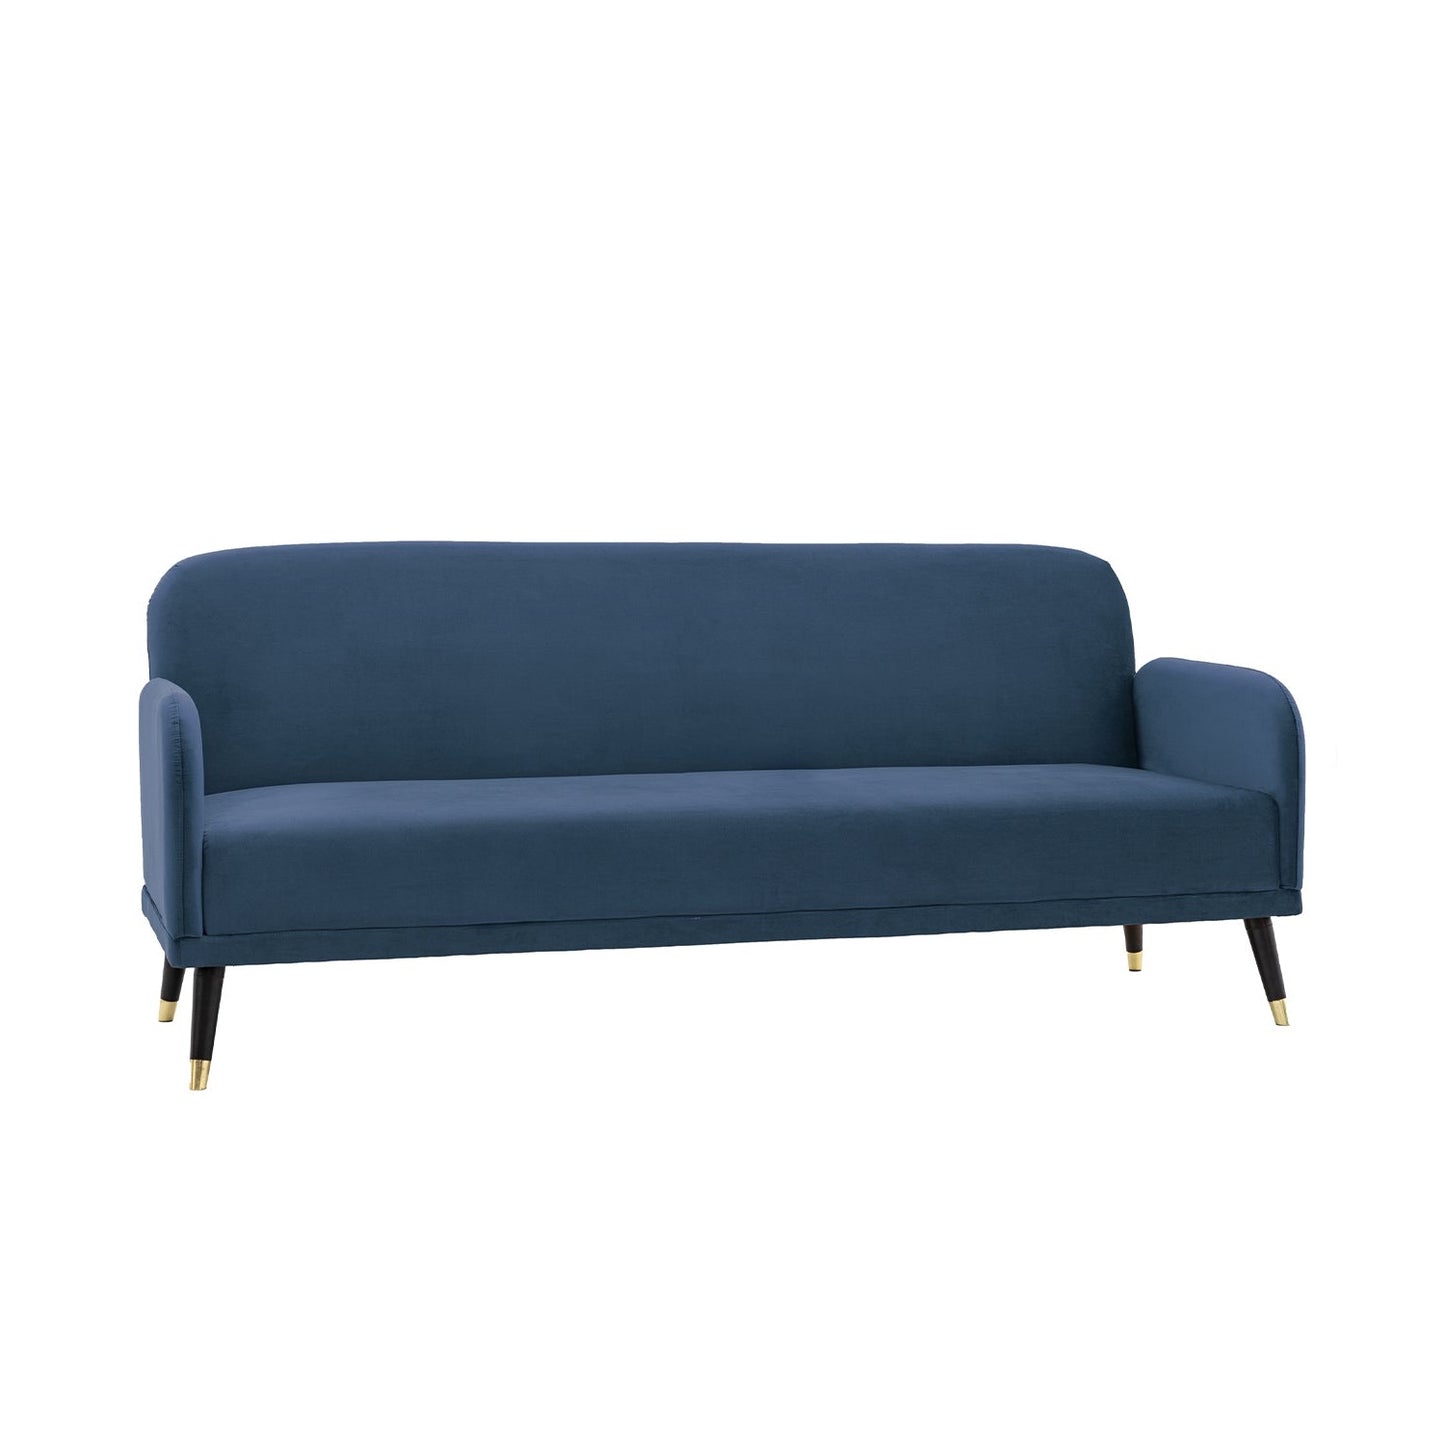 Dawson Sofa Bed - Navy Blue Velvet